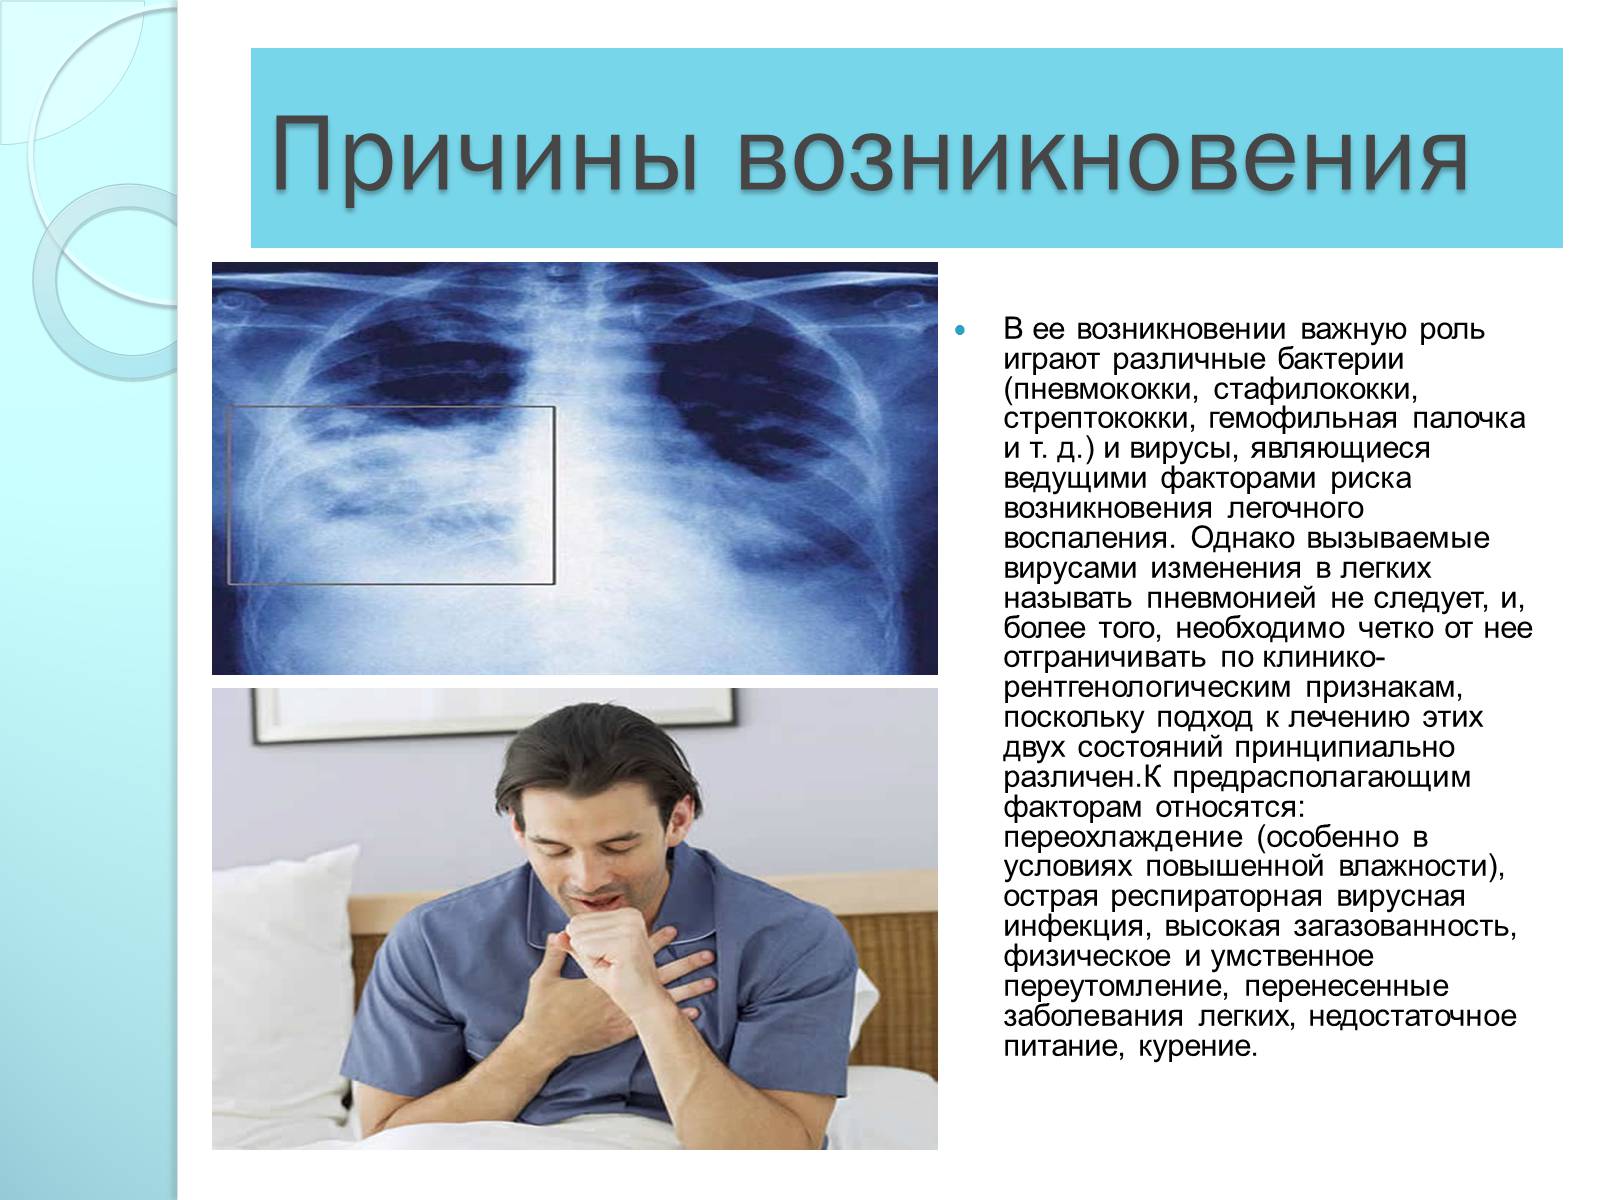 Причины болезней органов дыхания. Заболевания дыхательной системы презентация. Причины возникновения заболеваний. Презентация на тему болезни органов дыхания. Пневмония причины возникновения.